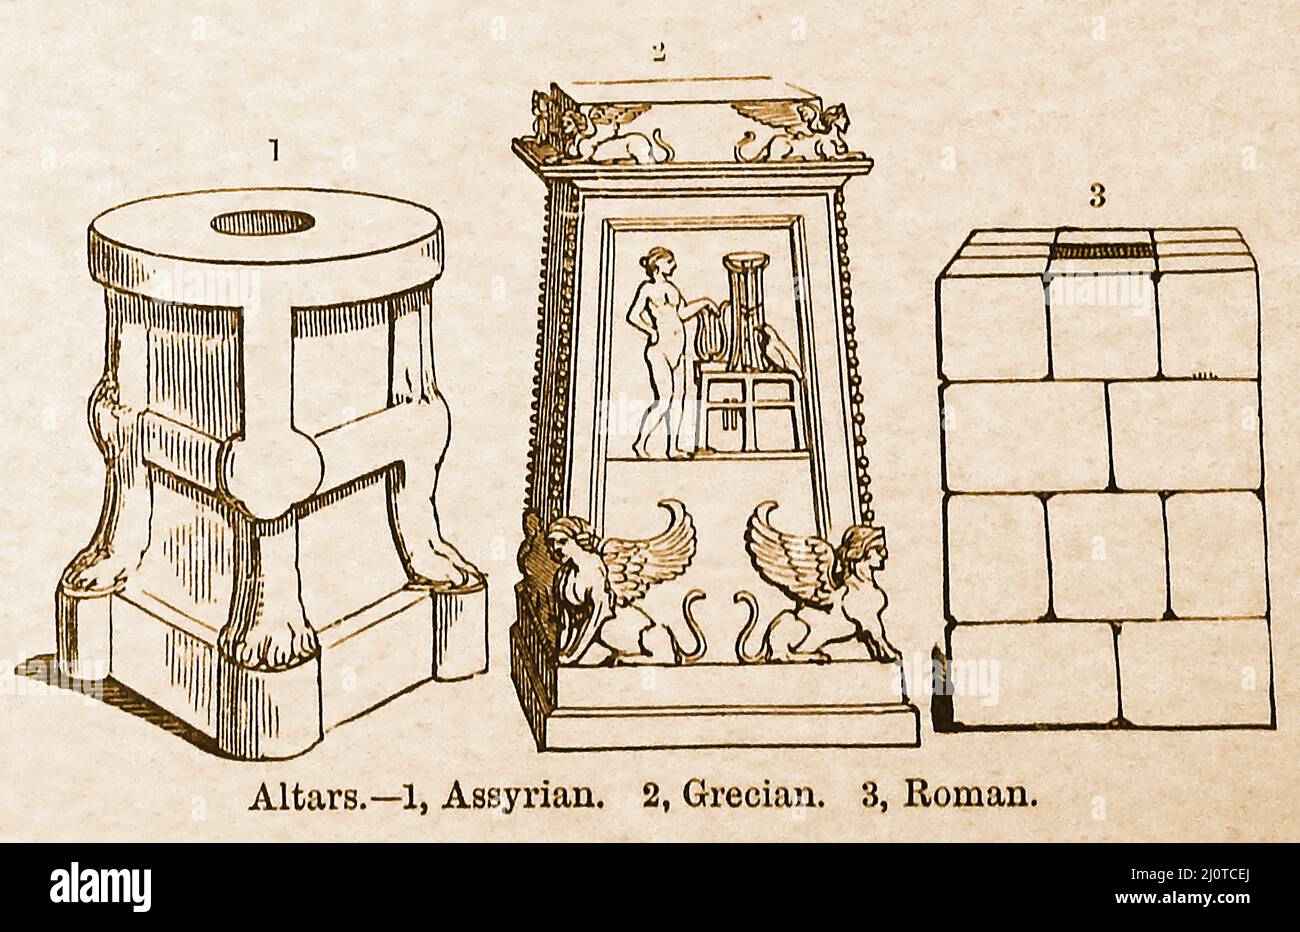 Un confronto del 19th secolo tra gli stili di 3 altari antichi, assiri, greci e romani Foto Stock